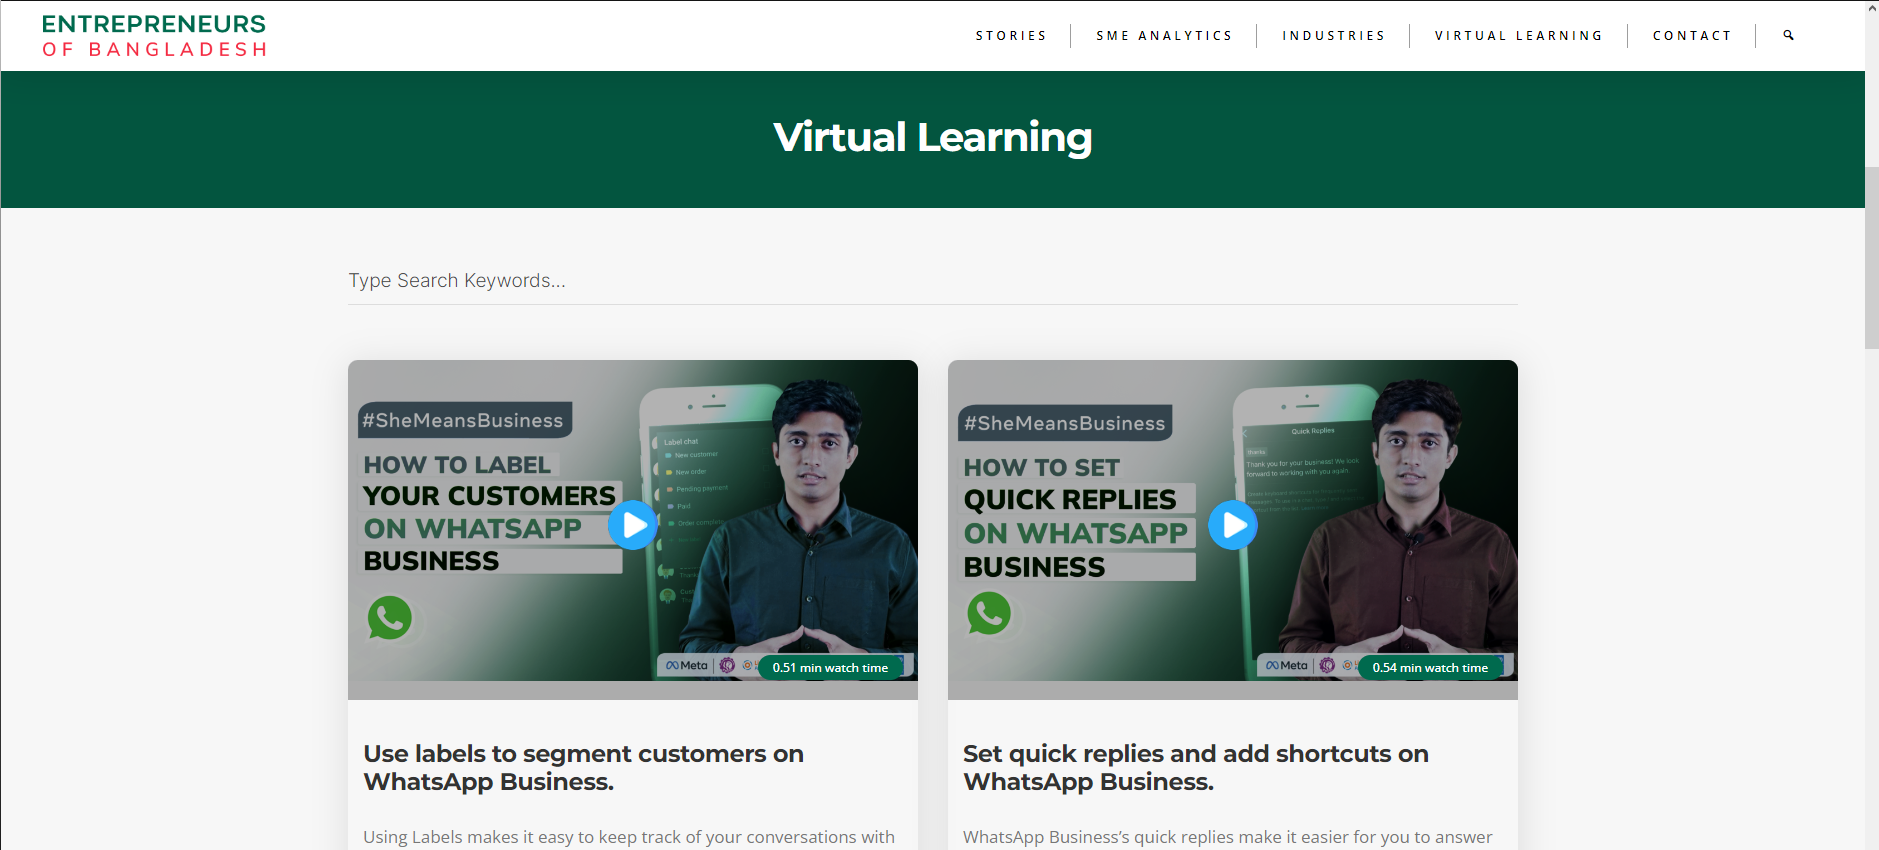 Entrepreneurs of Bangladesh Virtual Learning Platform